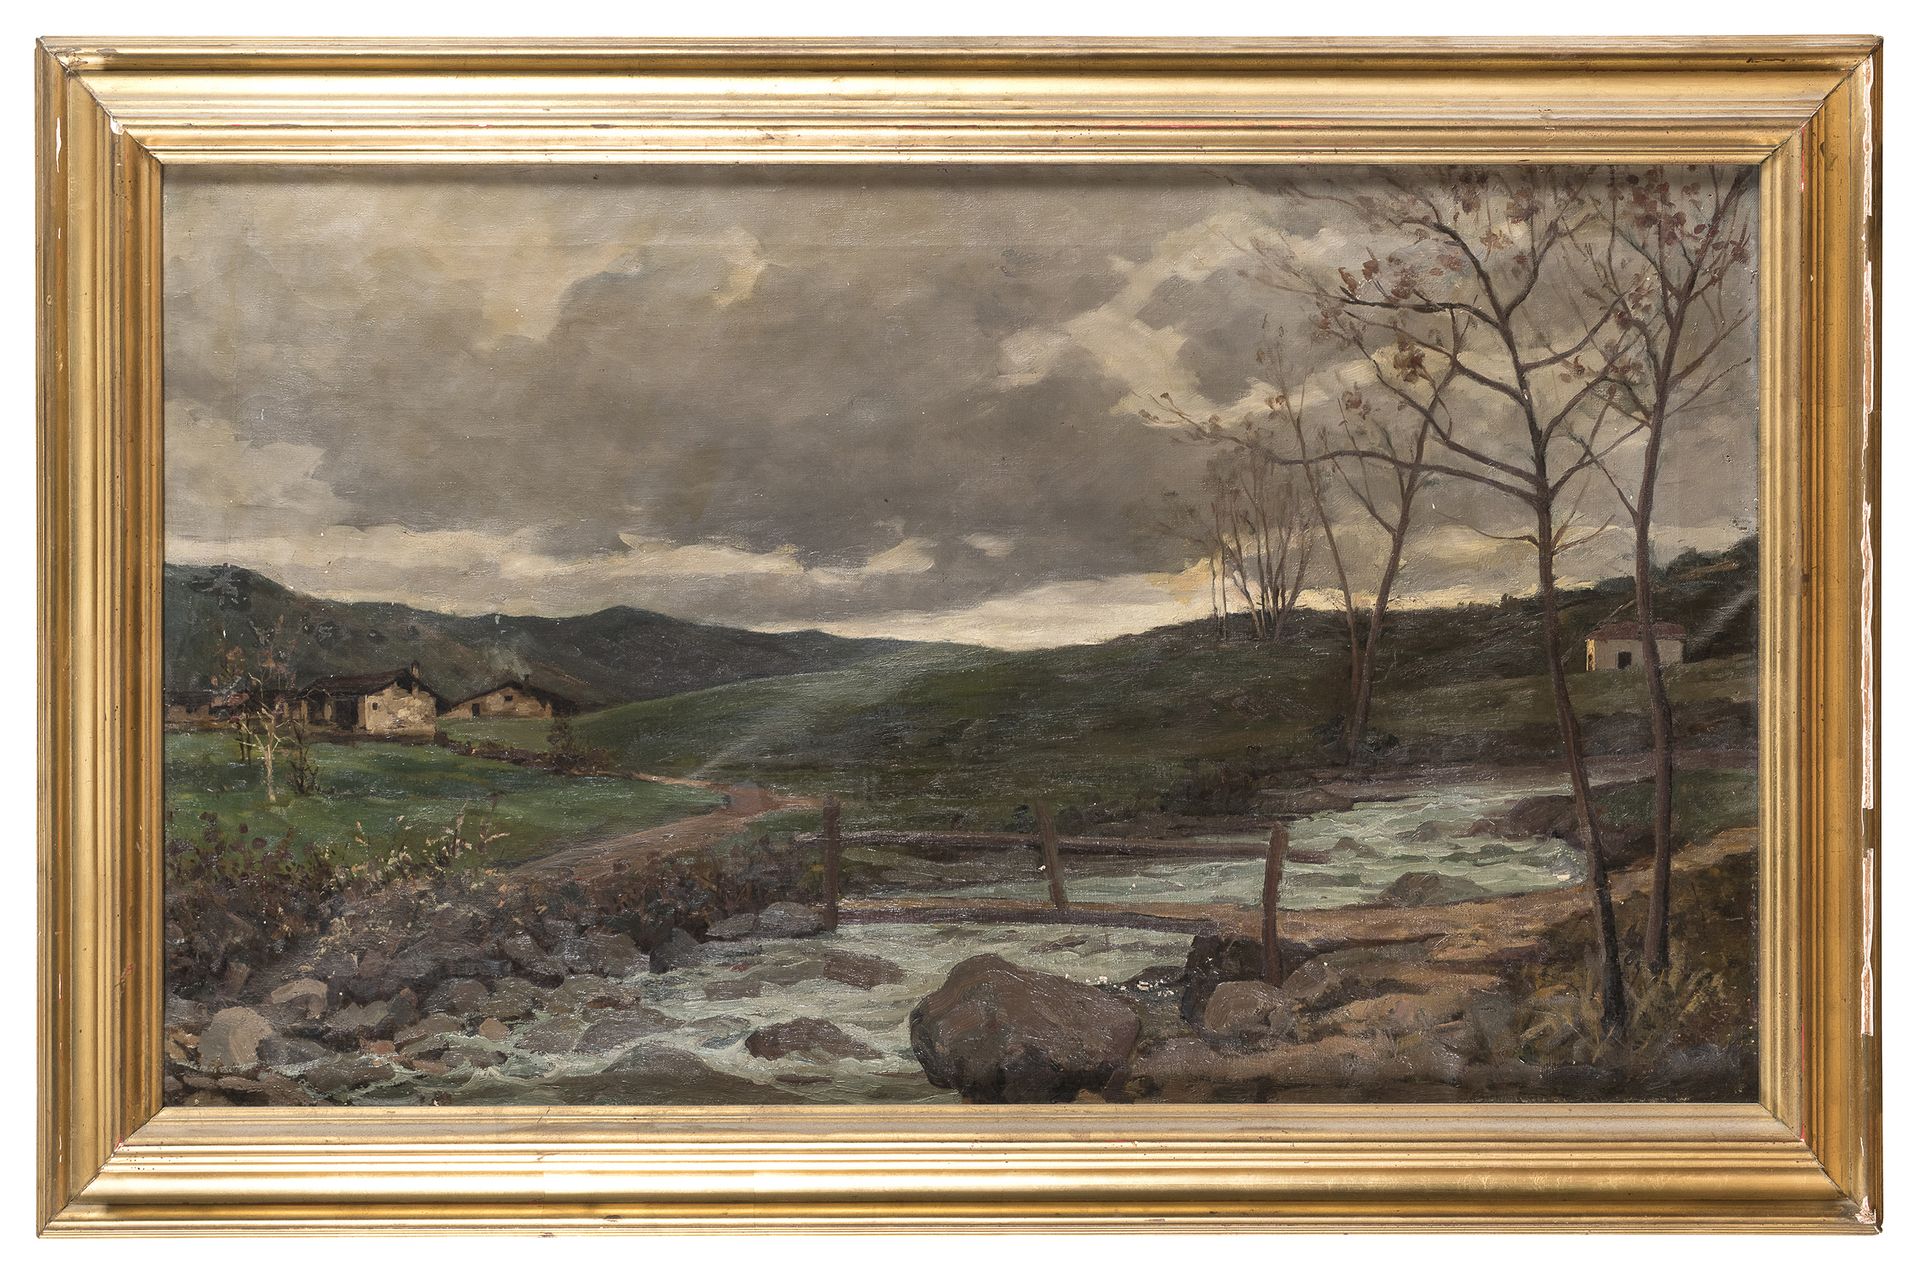 Null 意大利画家，20世纪初



景观与溪流

布面油画，cm. 54 x 90

无符号

镀金框架